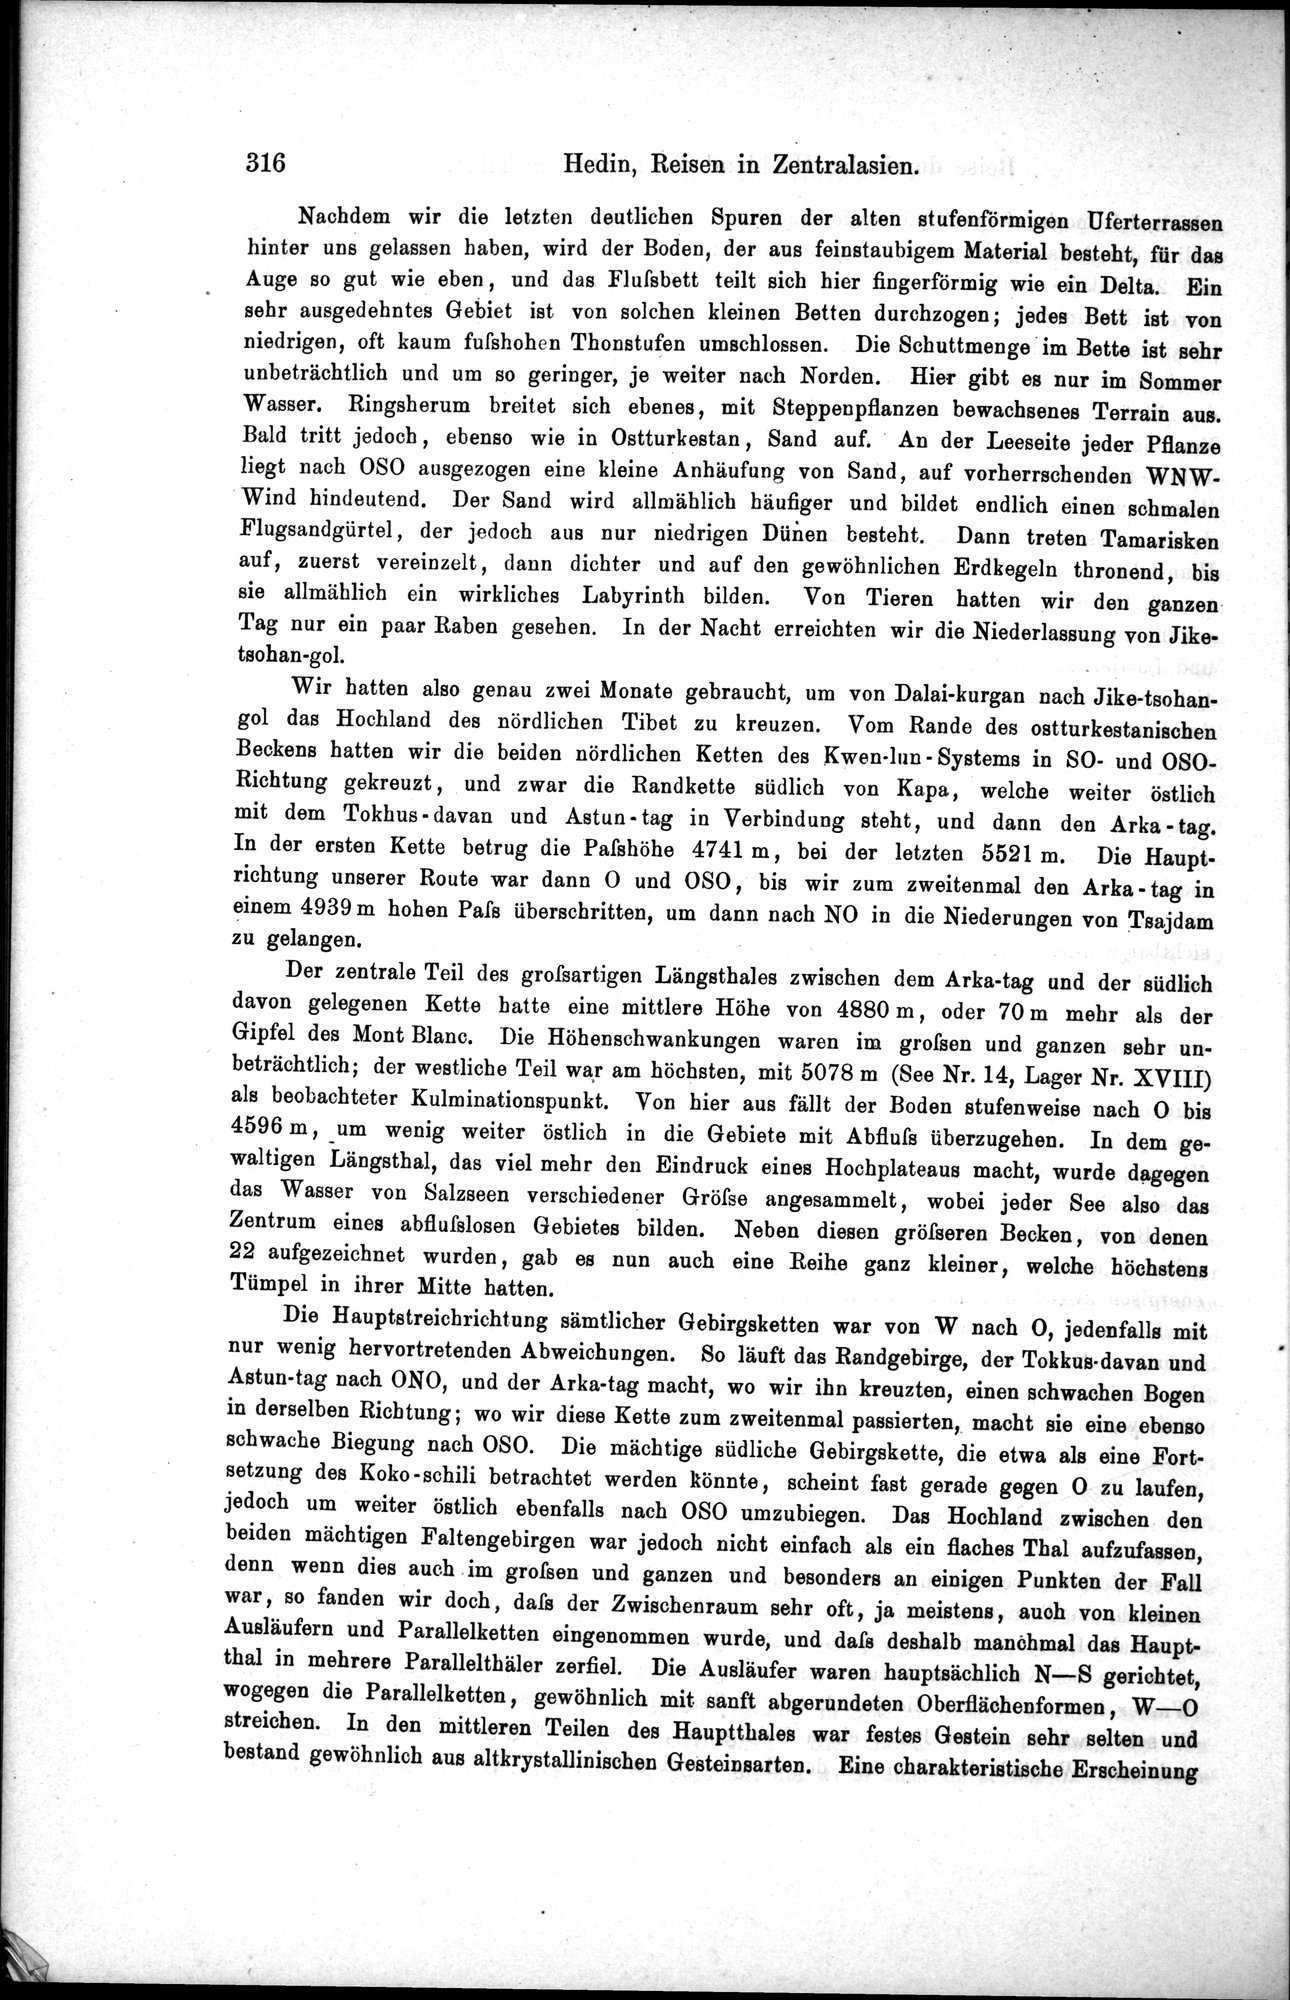 Die Geographische-Wissenschaftlichen Ergebnisse meiner Reisen in Zentralasien, 1894-1897 : vol.1 / Page 328 (Grayscale High Resolution Image)